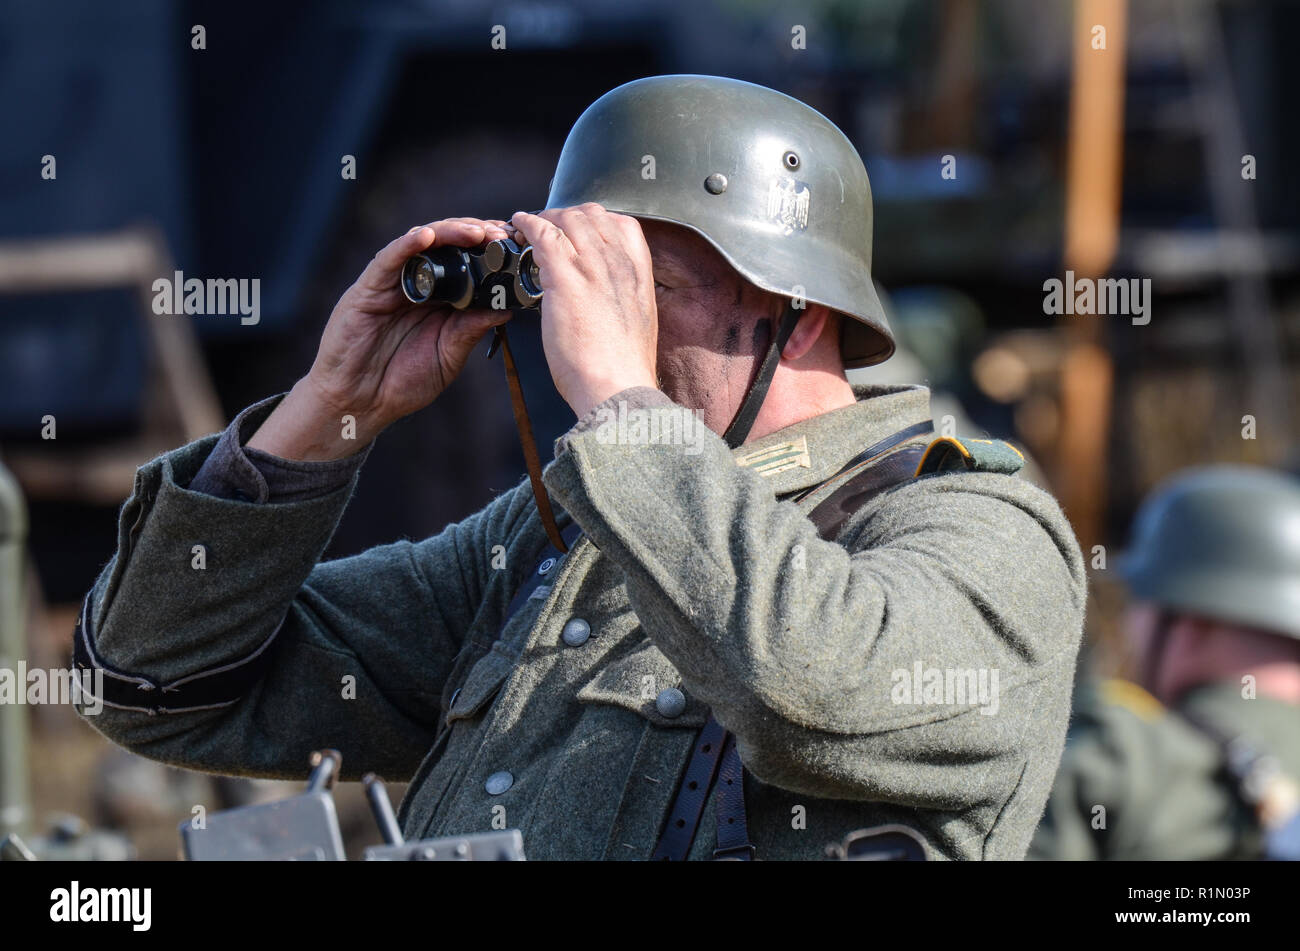 Reenactor, Nachstellung eines deutschen Soldaten aus dem Zweiten Weltkrieg, der durch ein Fernglas schaut. Infanteristen der Wehrmacht. Einheitlich Stockfoto